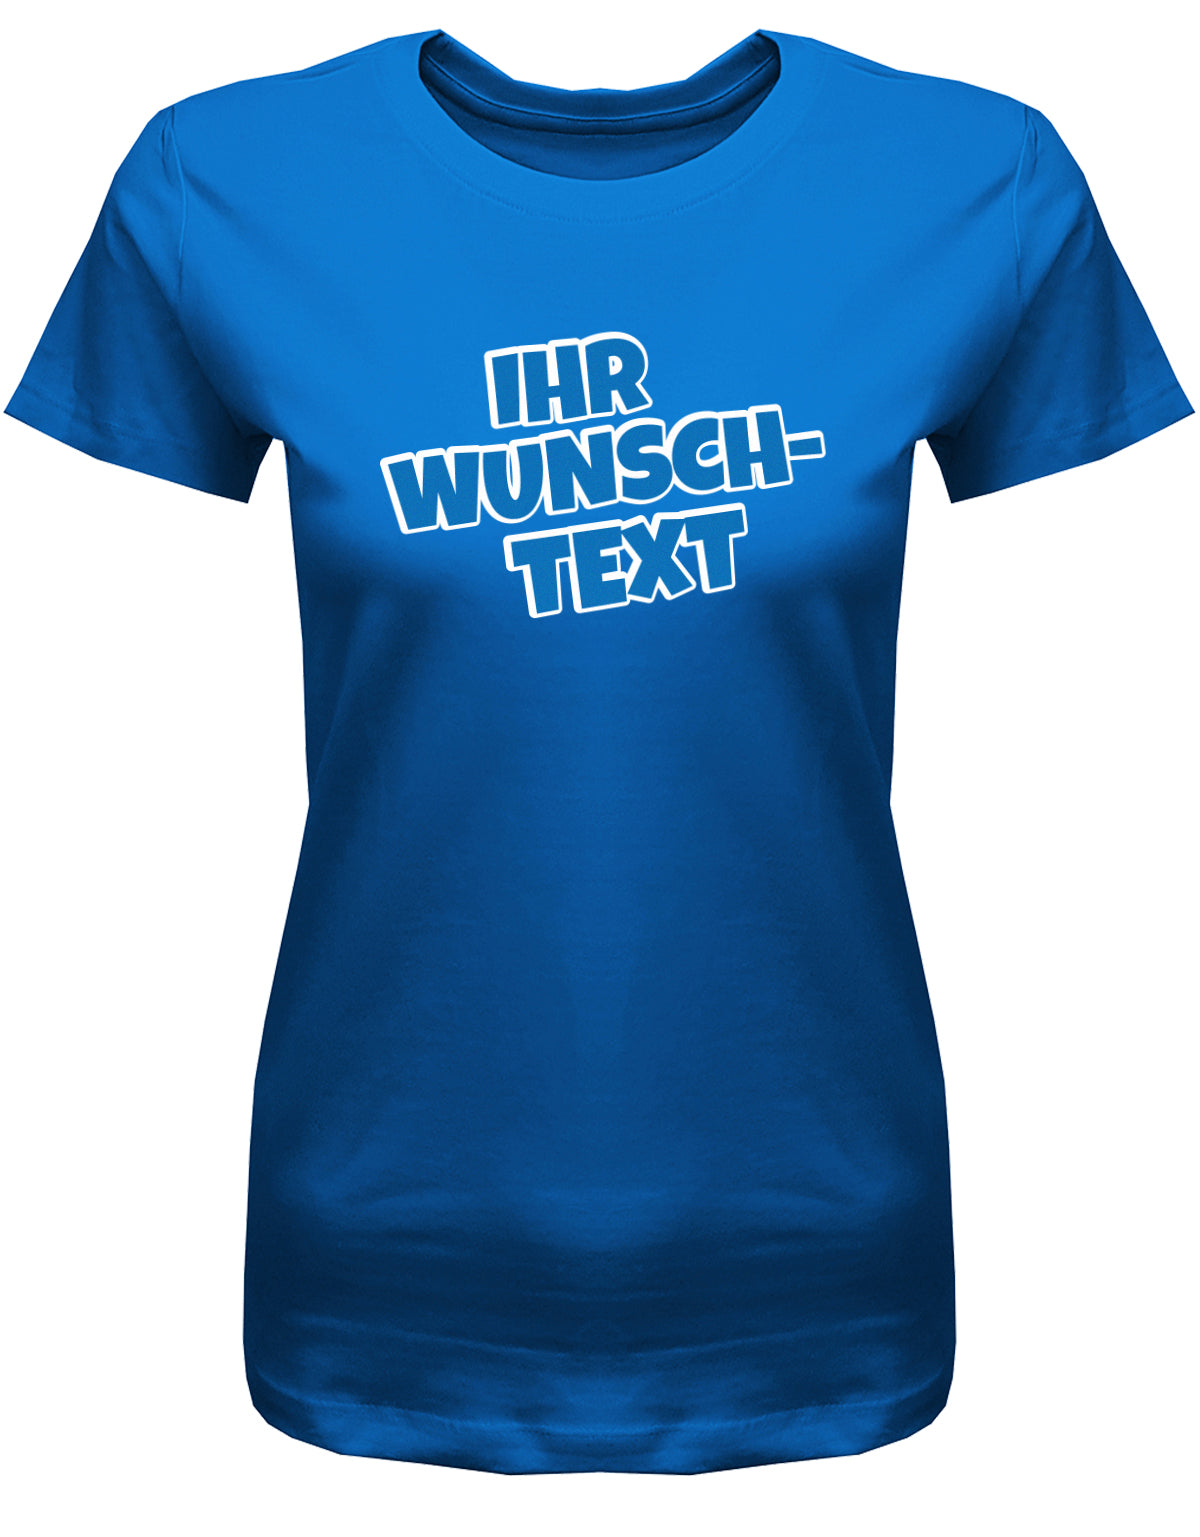 Frauen Tshirt mit Wunschtext.  Comic Schriftart mit weißer Umrandung.  Royalblau